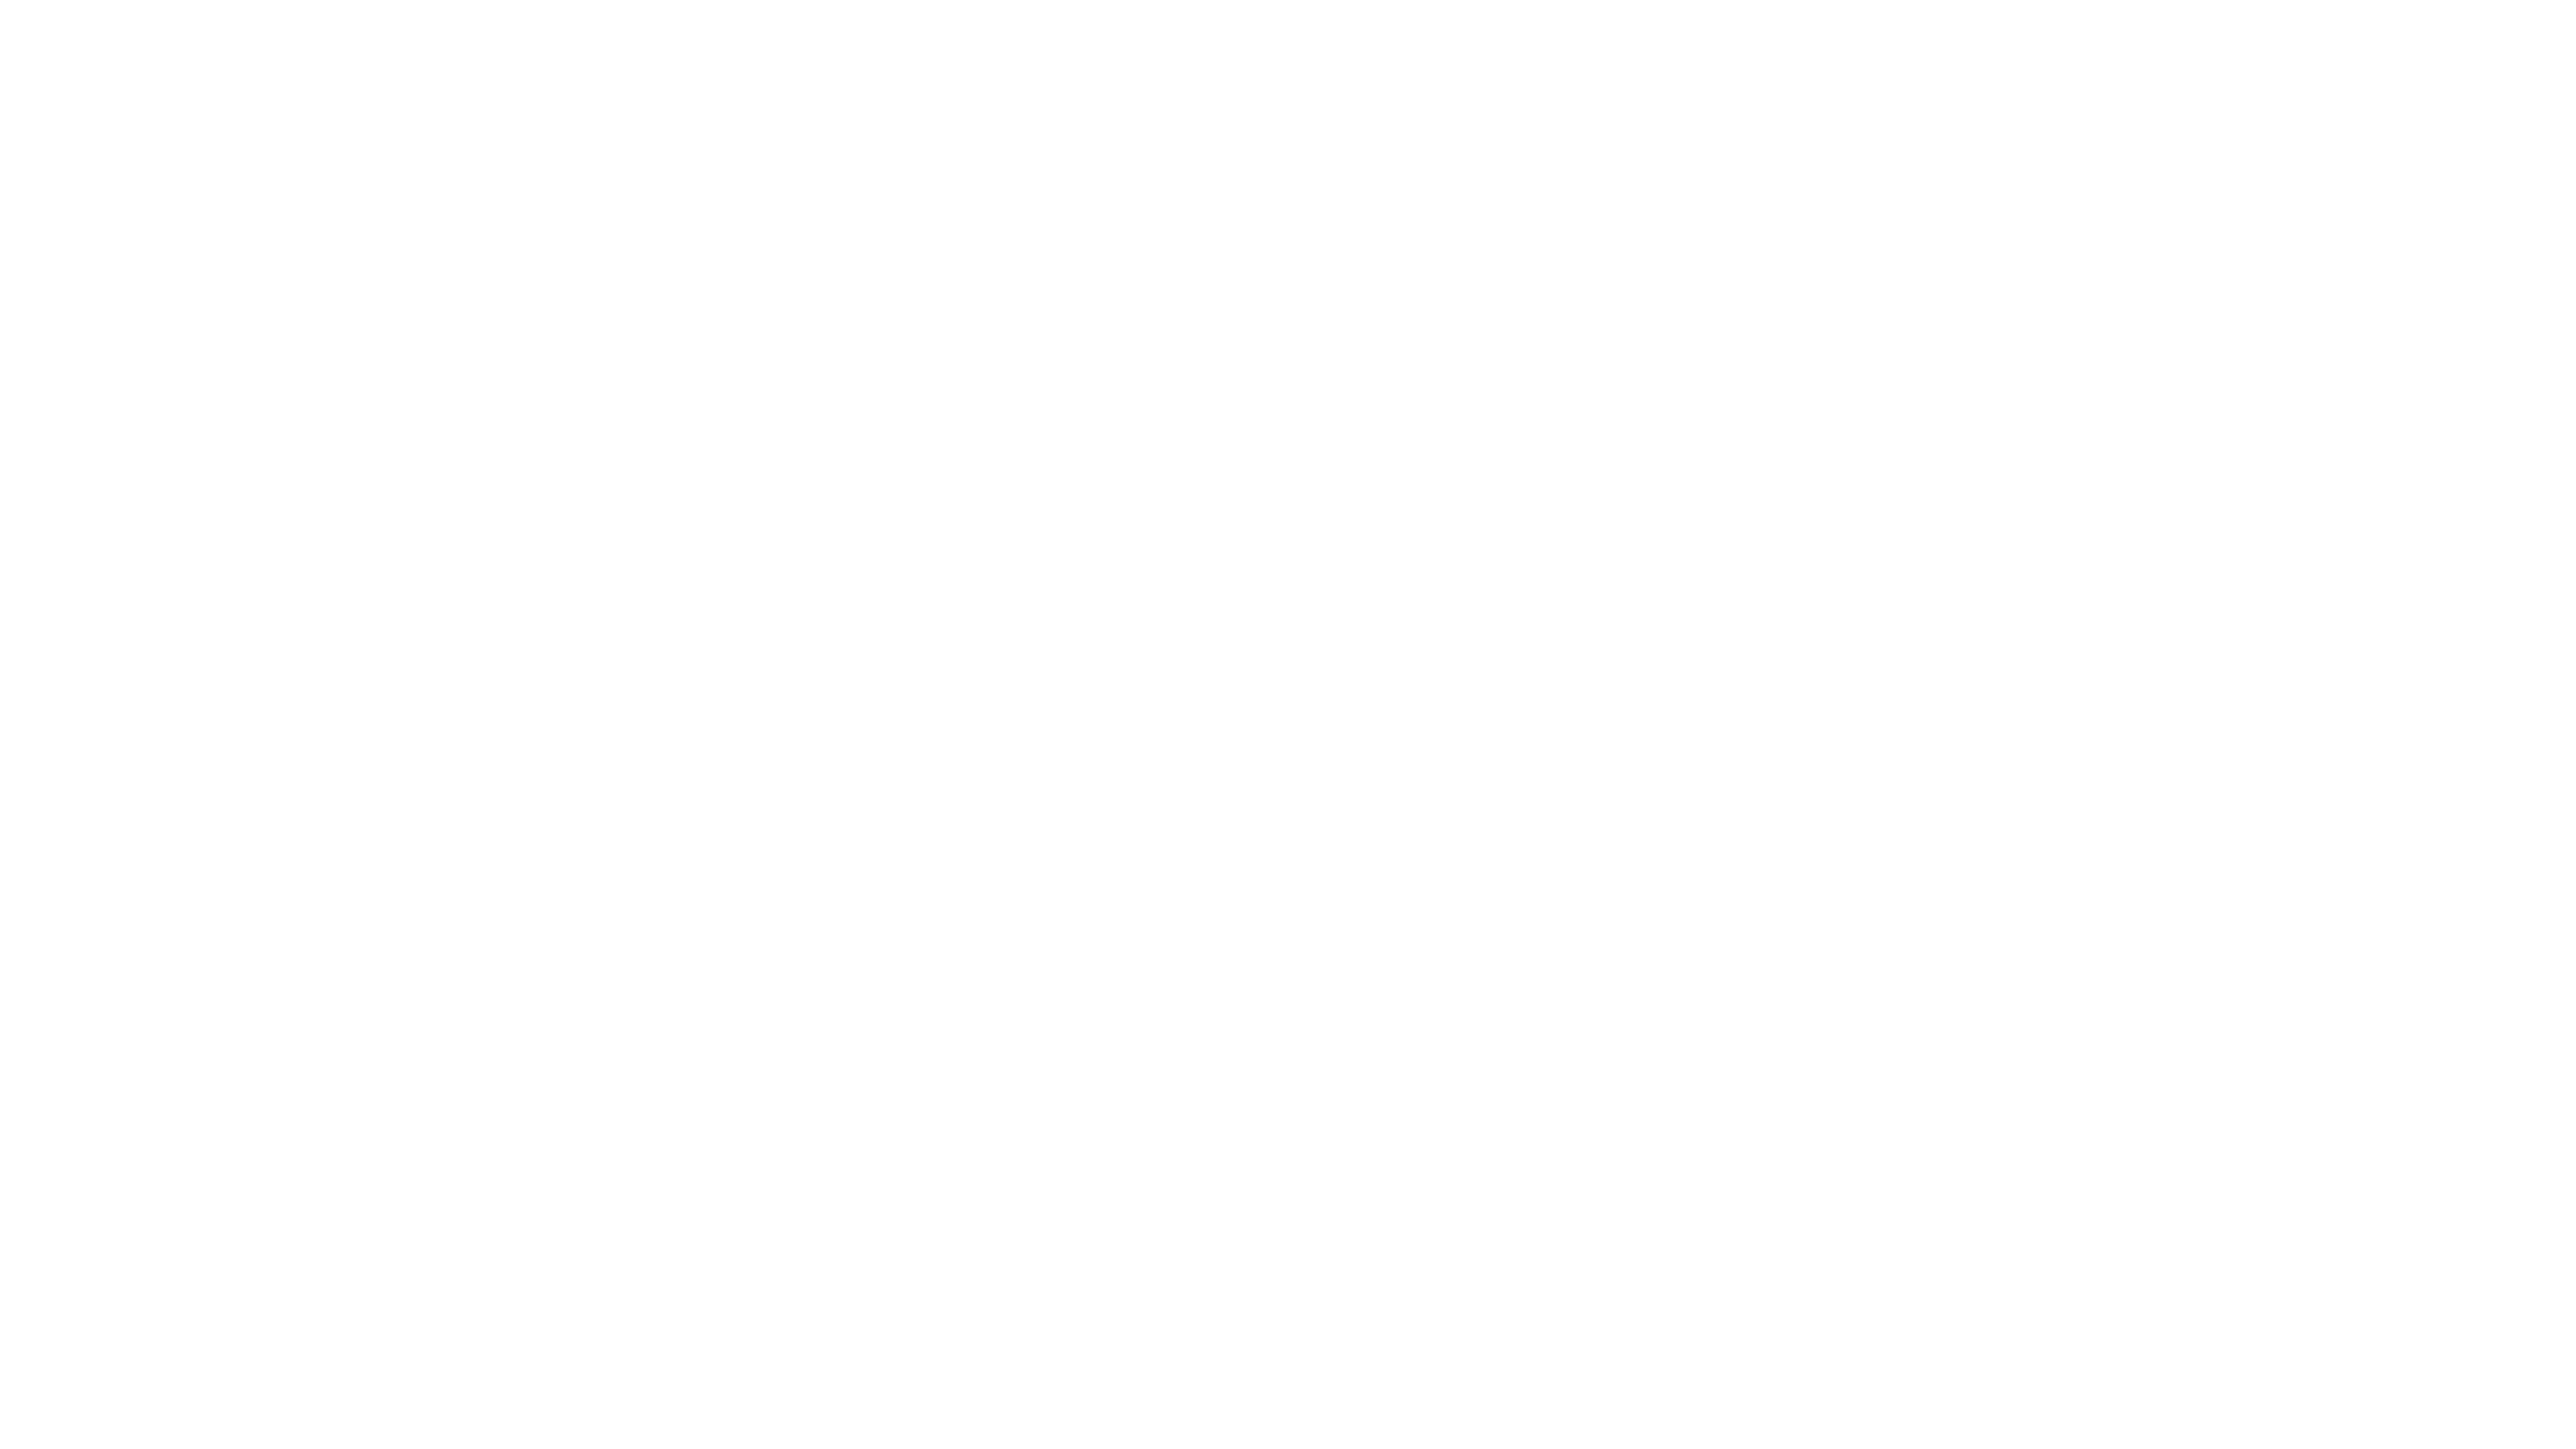 Backward Audio